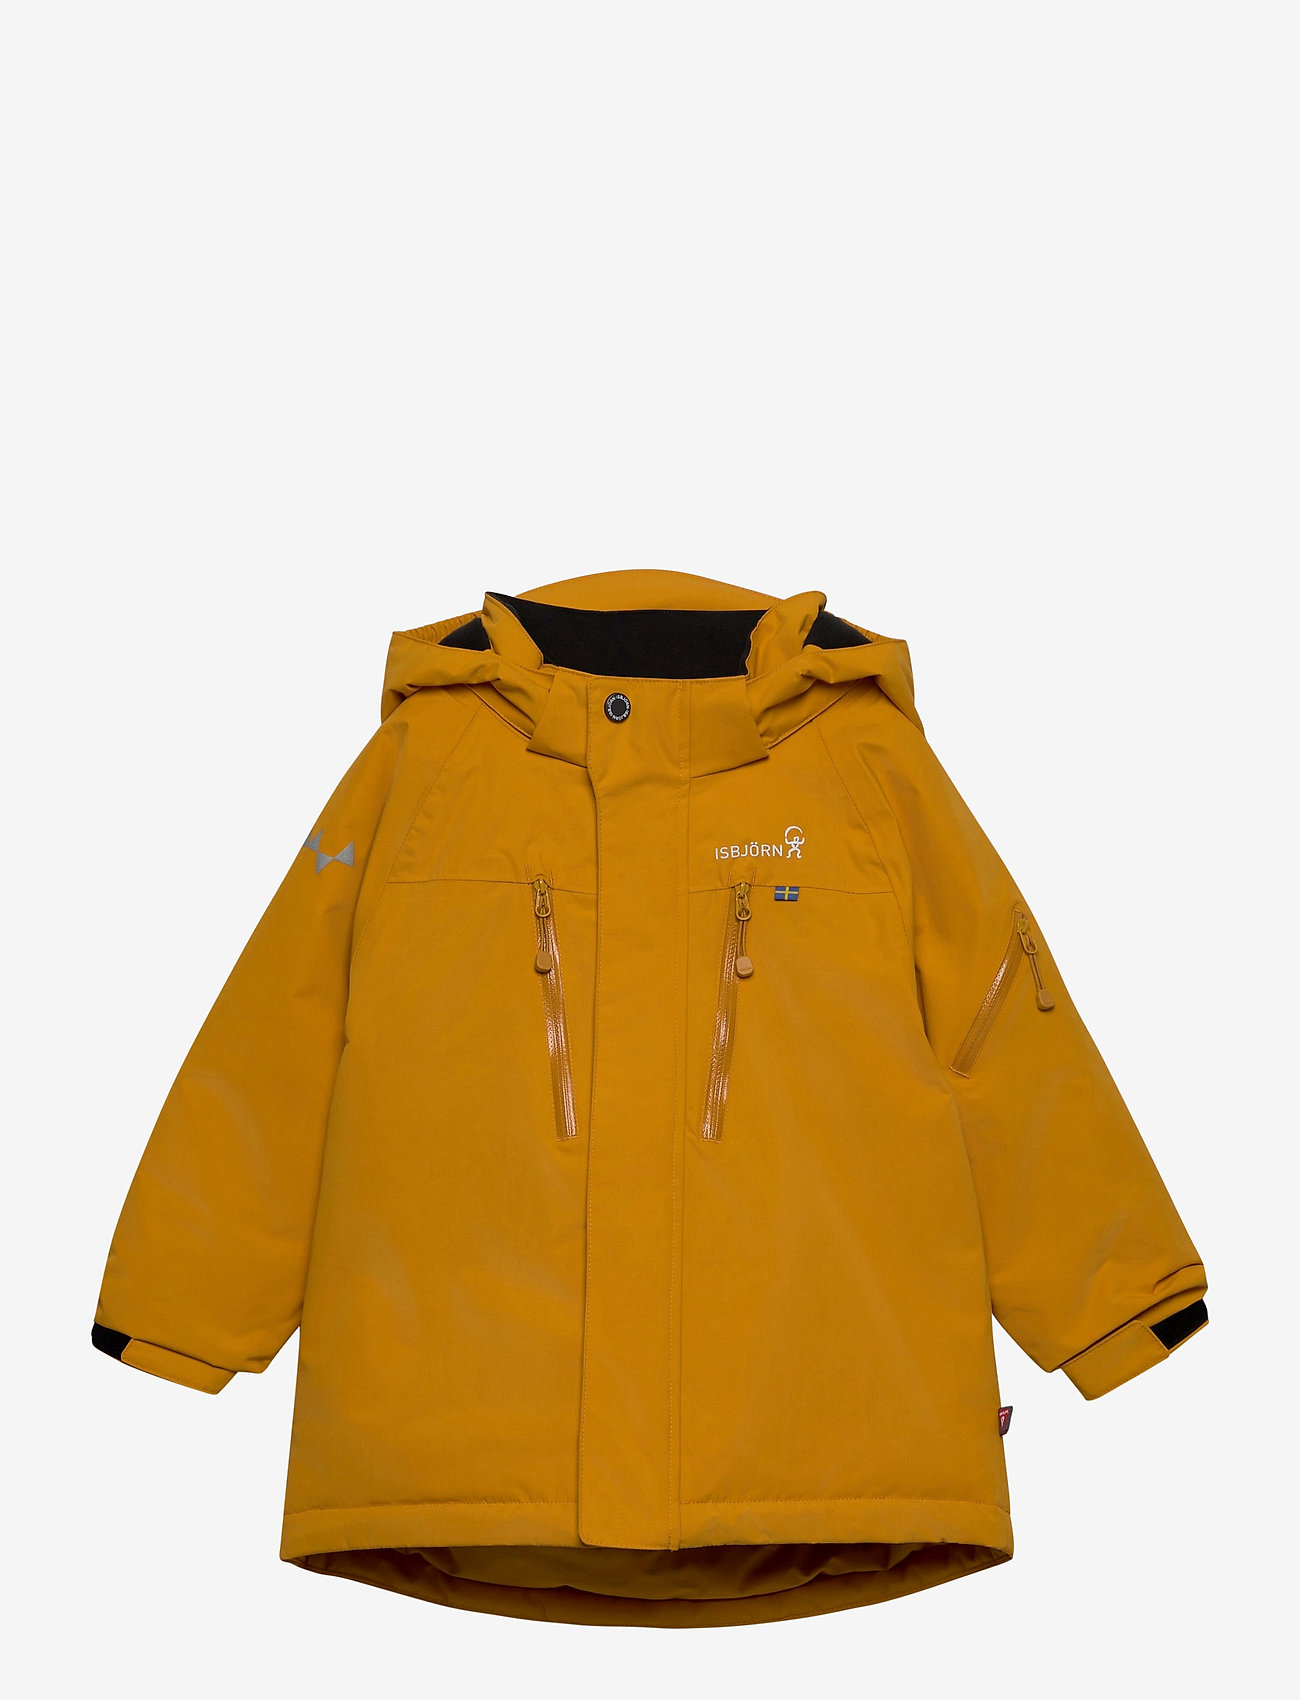 ISBJÖRN of Sweden - HELICOPTER Winter Jacket Kids - ski jackets - saffron - 0